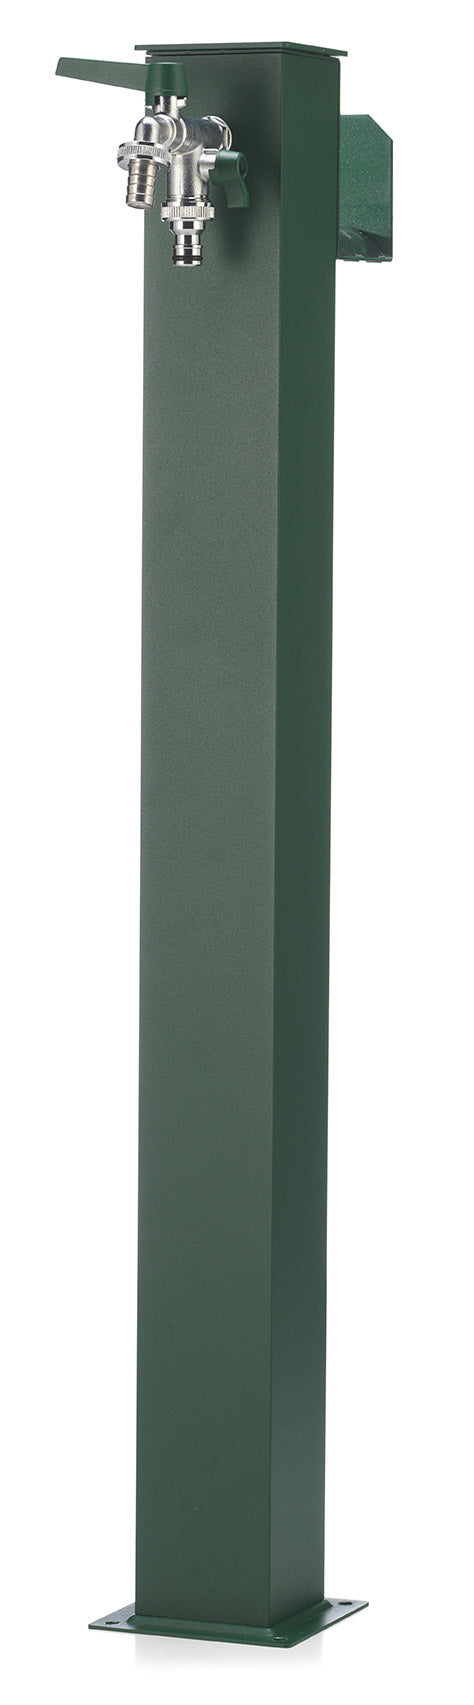 Fontana da Giardino con Doppio Rubinetto Belfer 42/QRR Verde-1